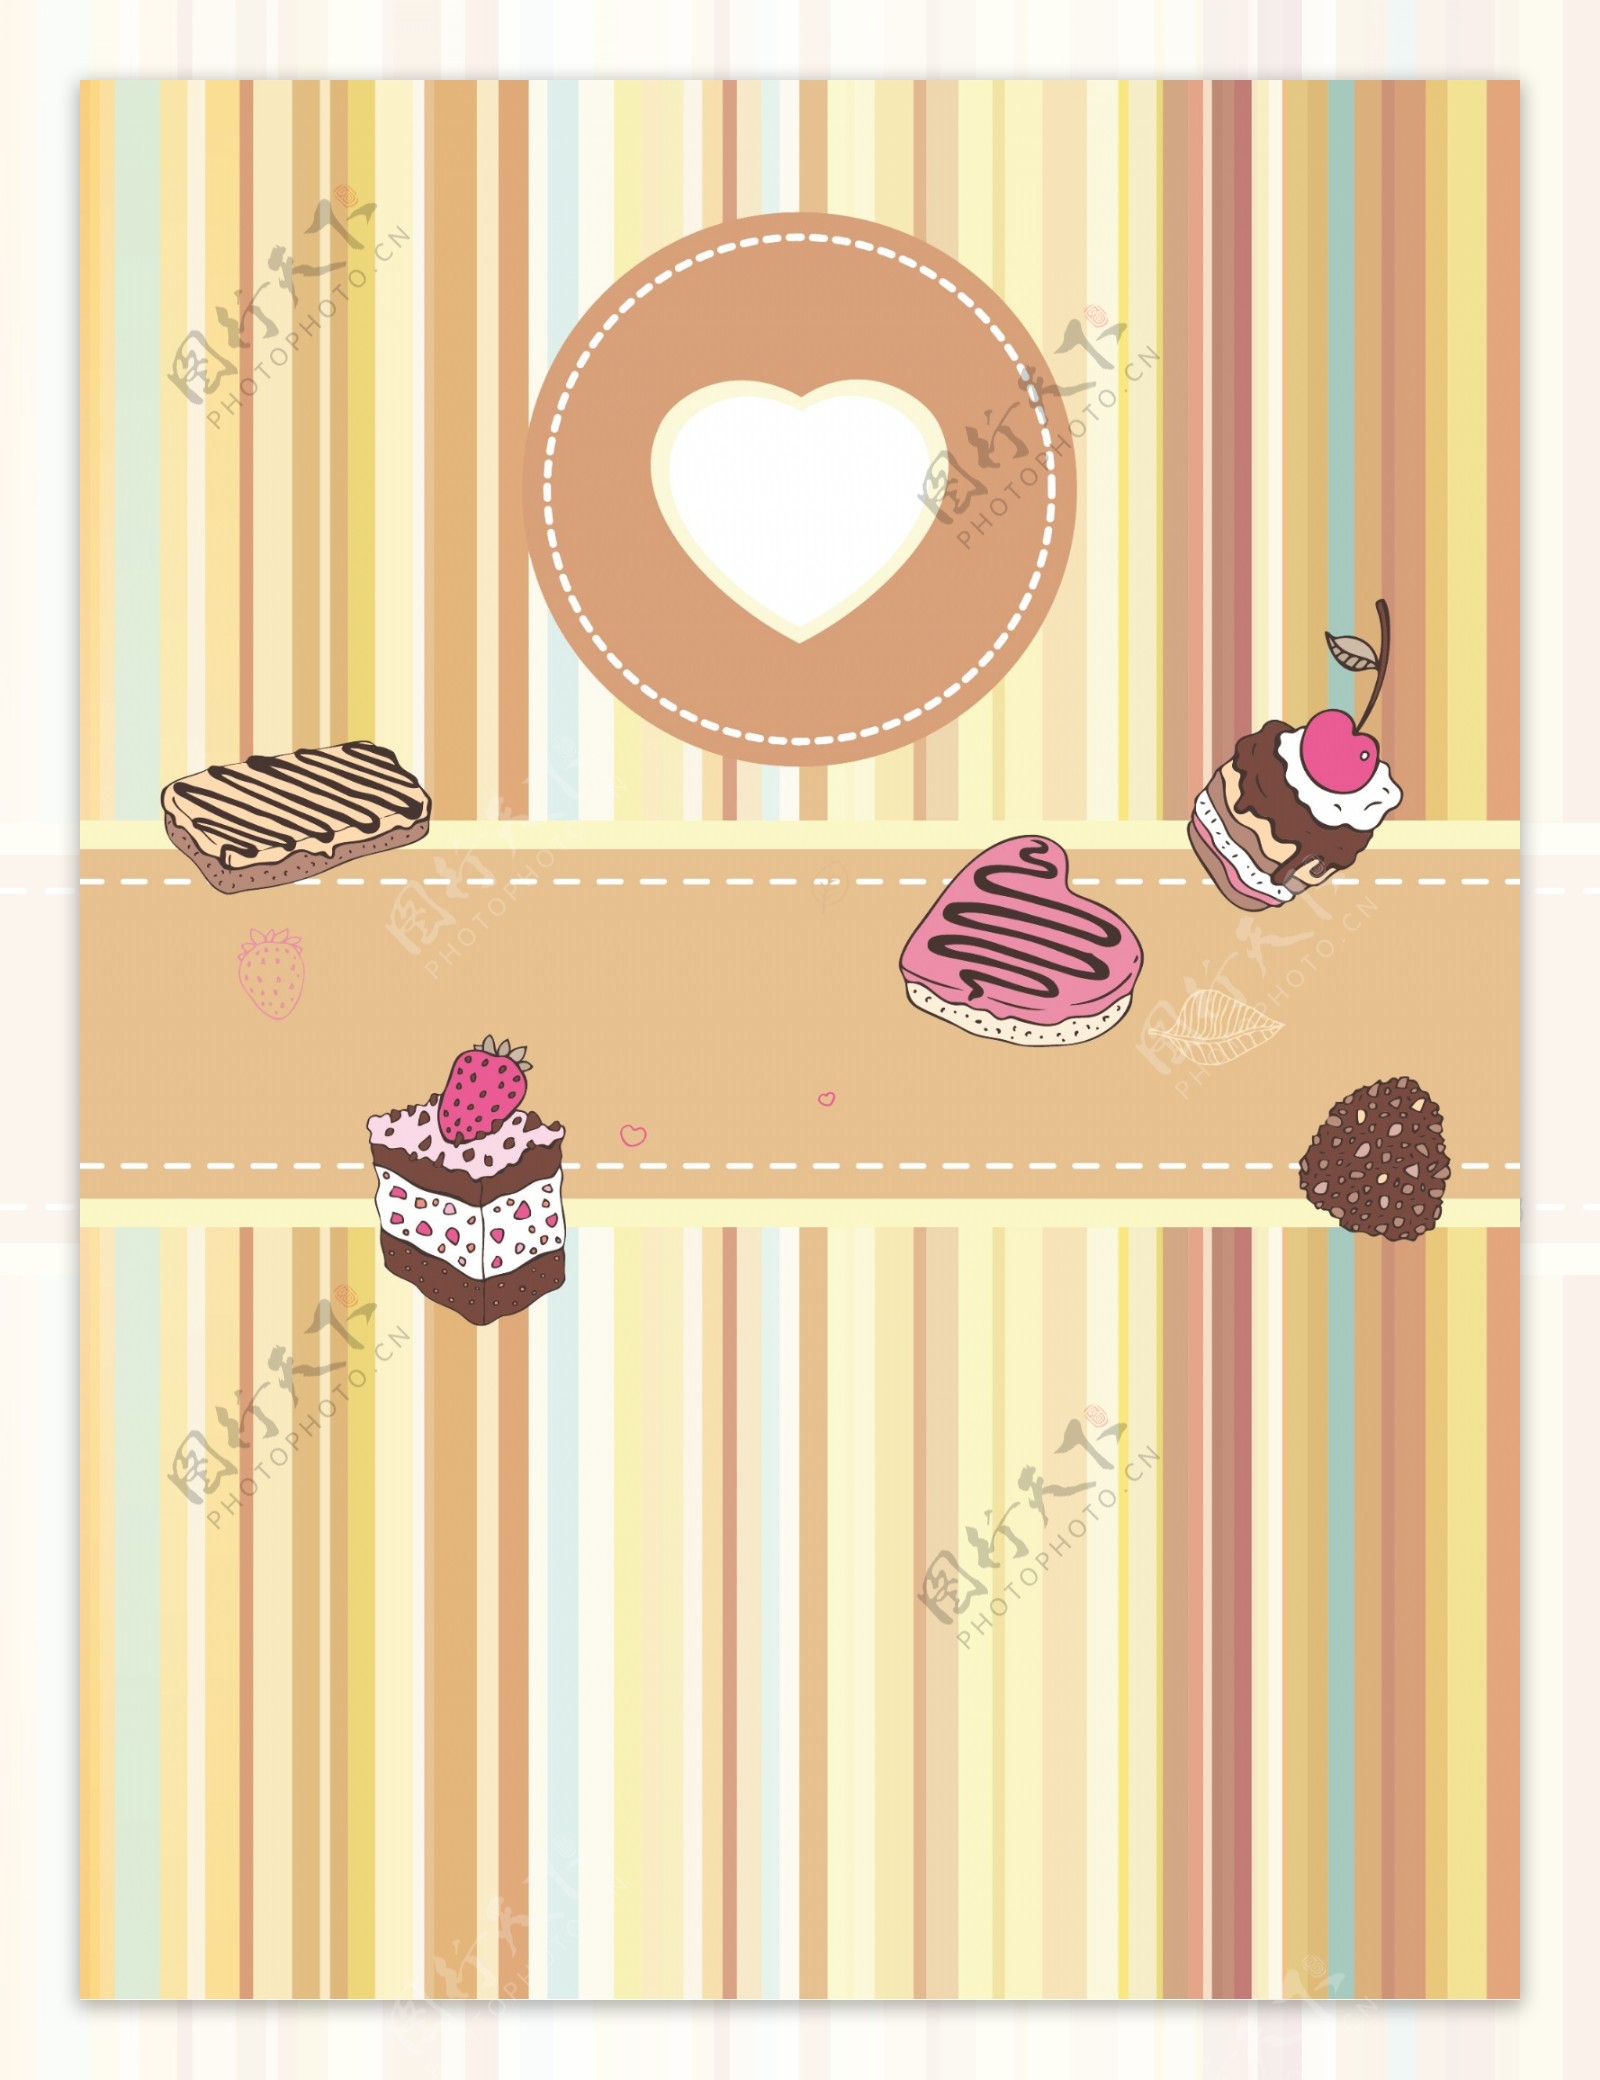 甜品美食蛋糕竖彩色条纹动感背景